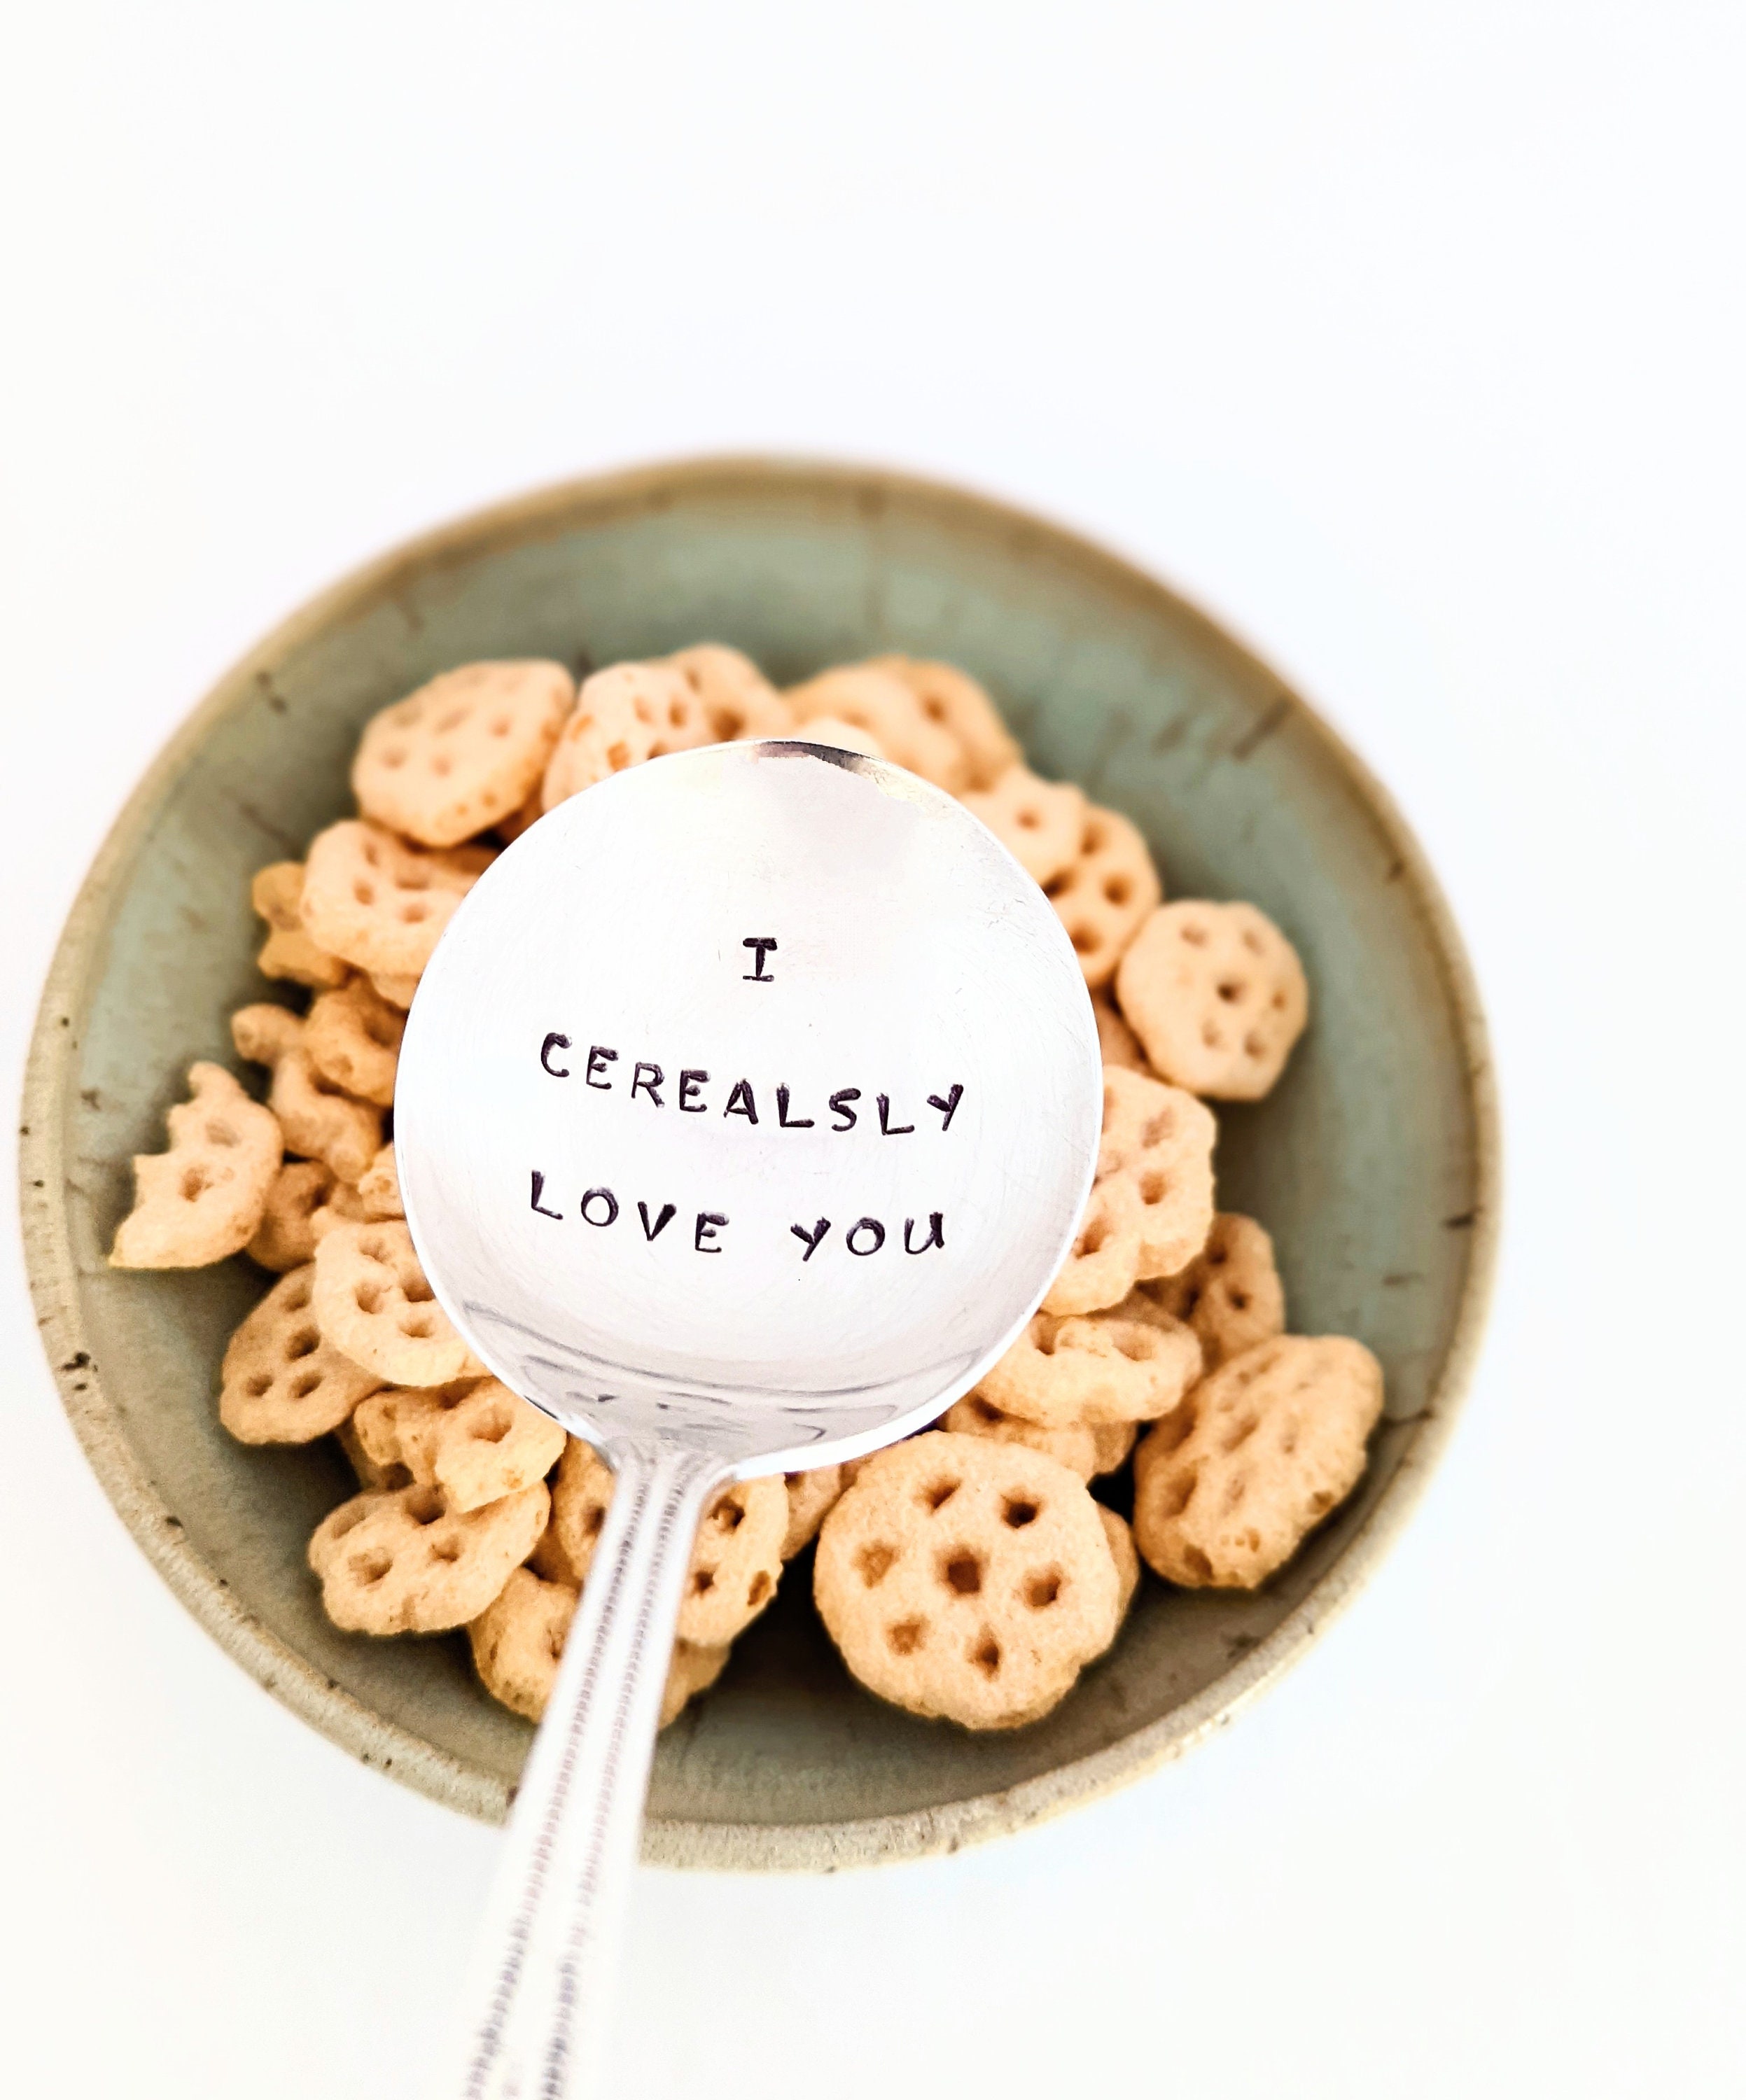 Cucchiaio per cereali con incisioneI Cerealsly Love You 